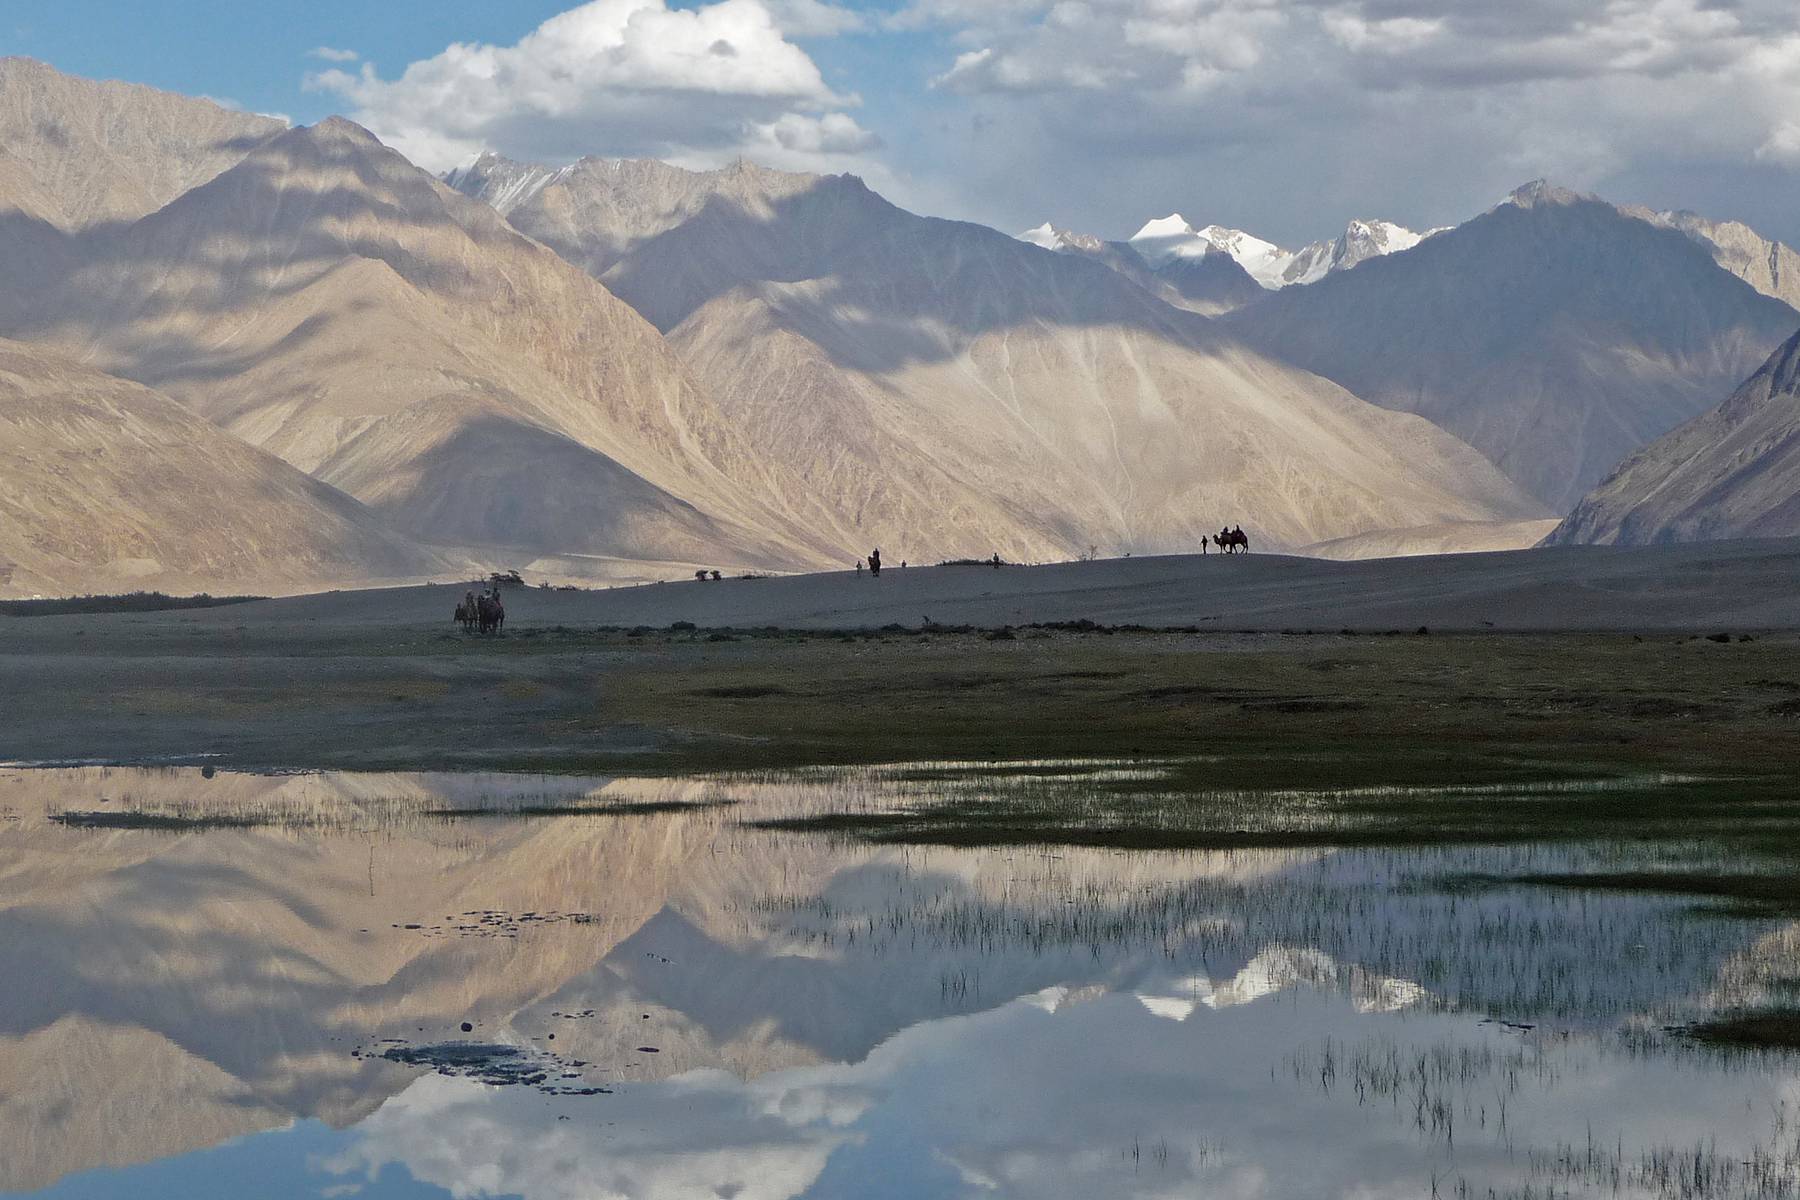 Nubra Valley. Enda platsen med kameler utanför Centralasien